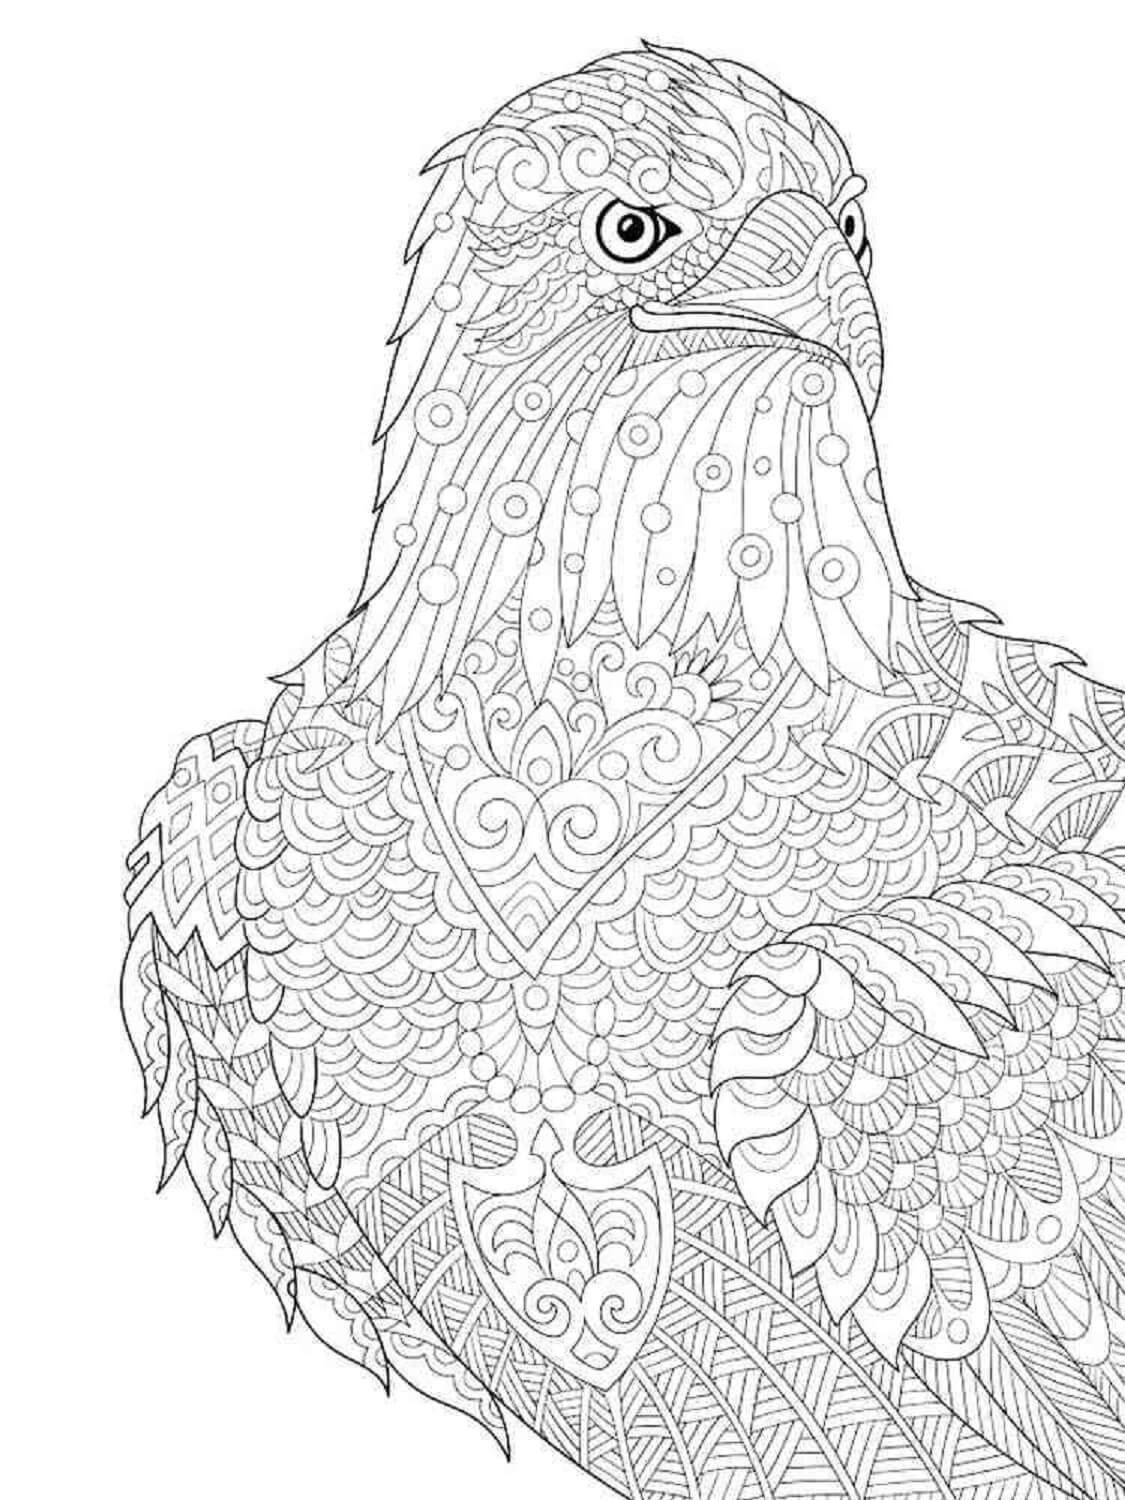 Mandala Eagle Coloring Page - Sheet 4 Mandalas